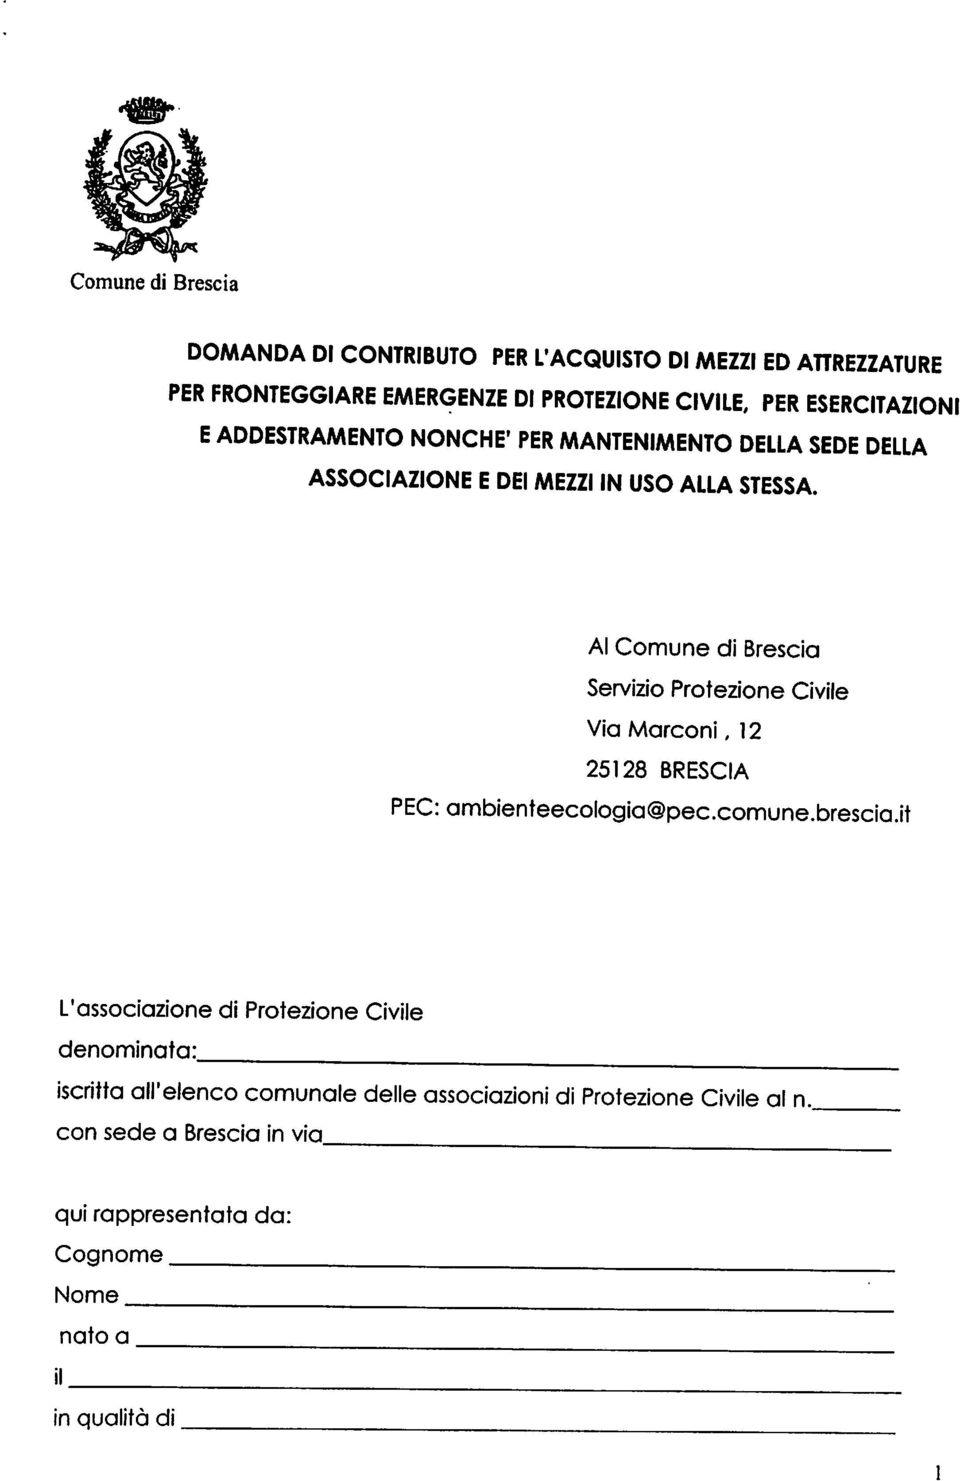 Al Comune di Brescia Servizio Protezione Civile Via Marconi, 12 25128 BRESCIA PEC: ambienteecologia@pec.comune.brescia.